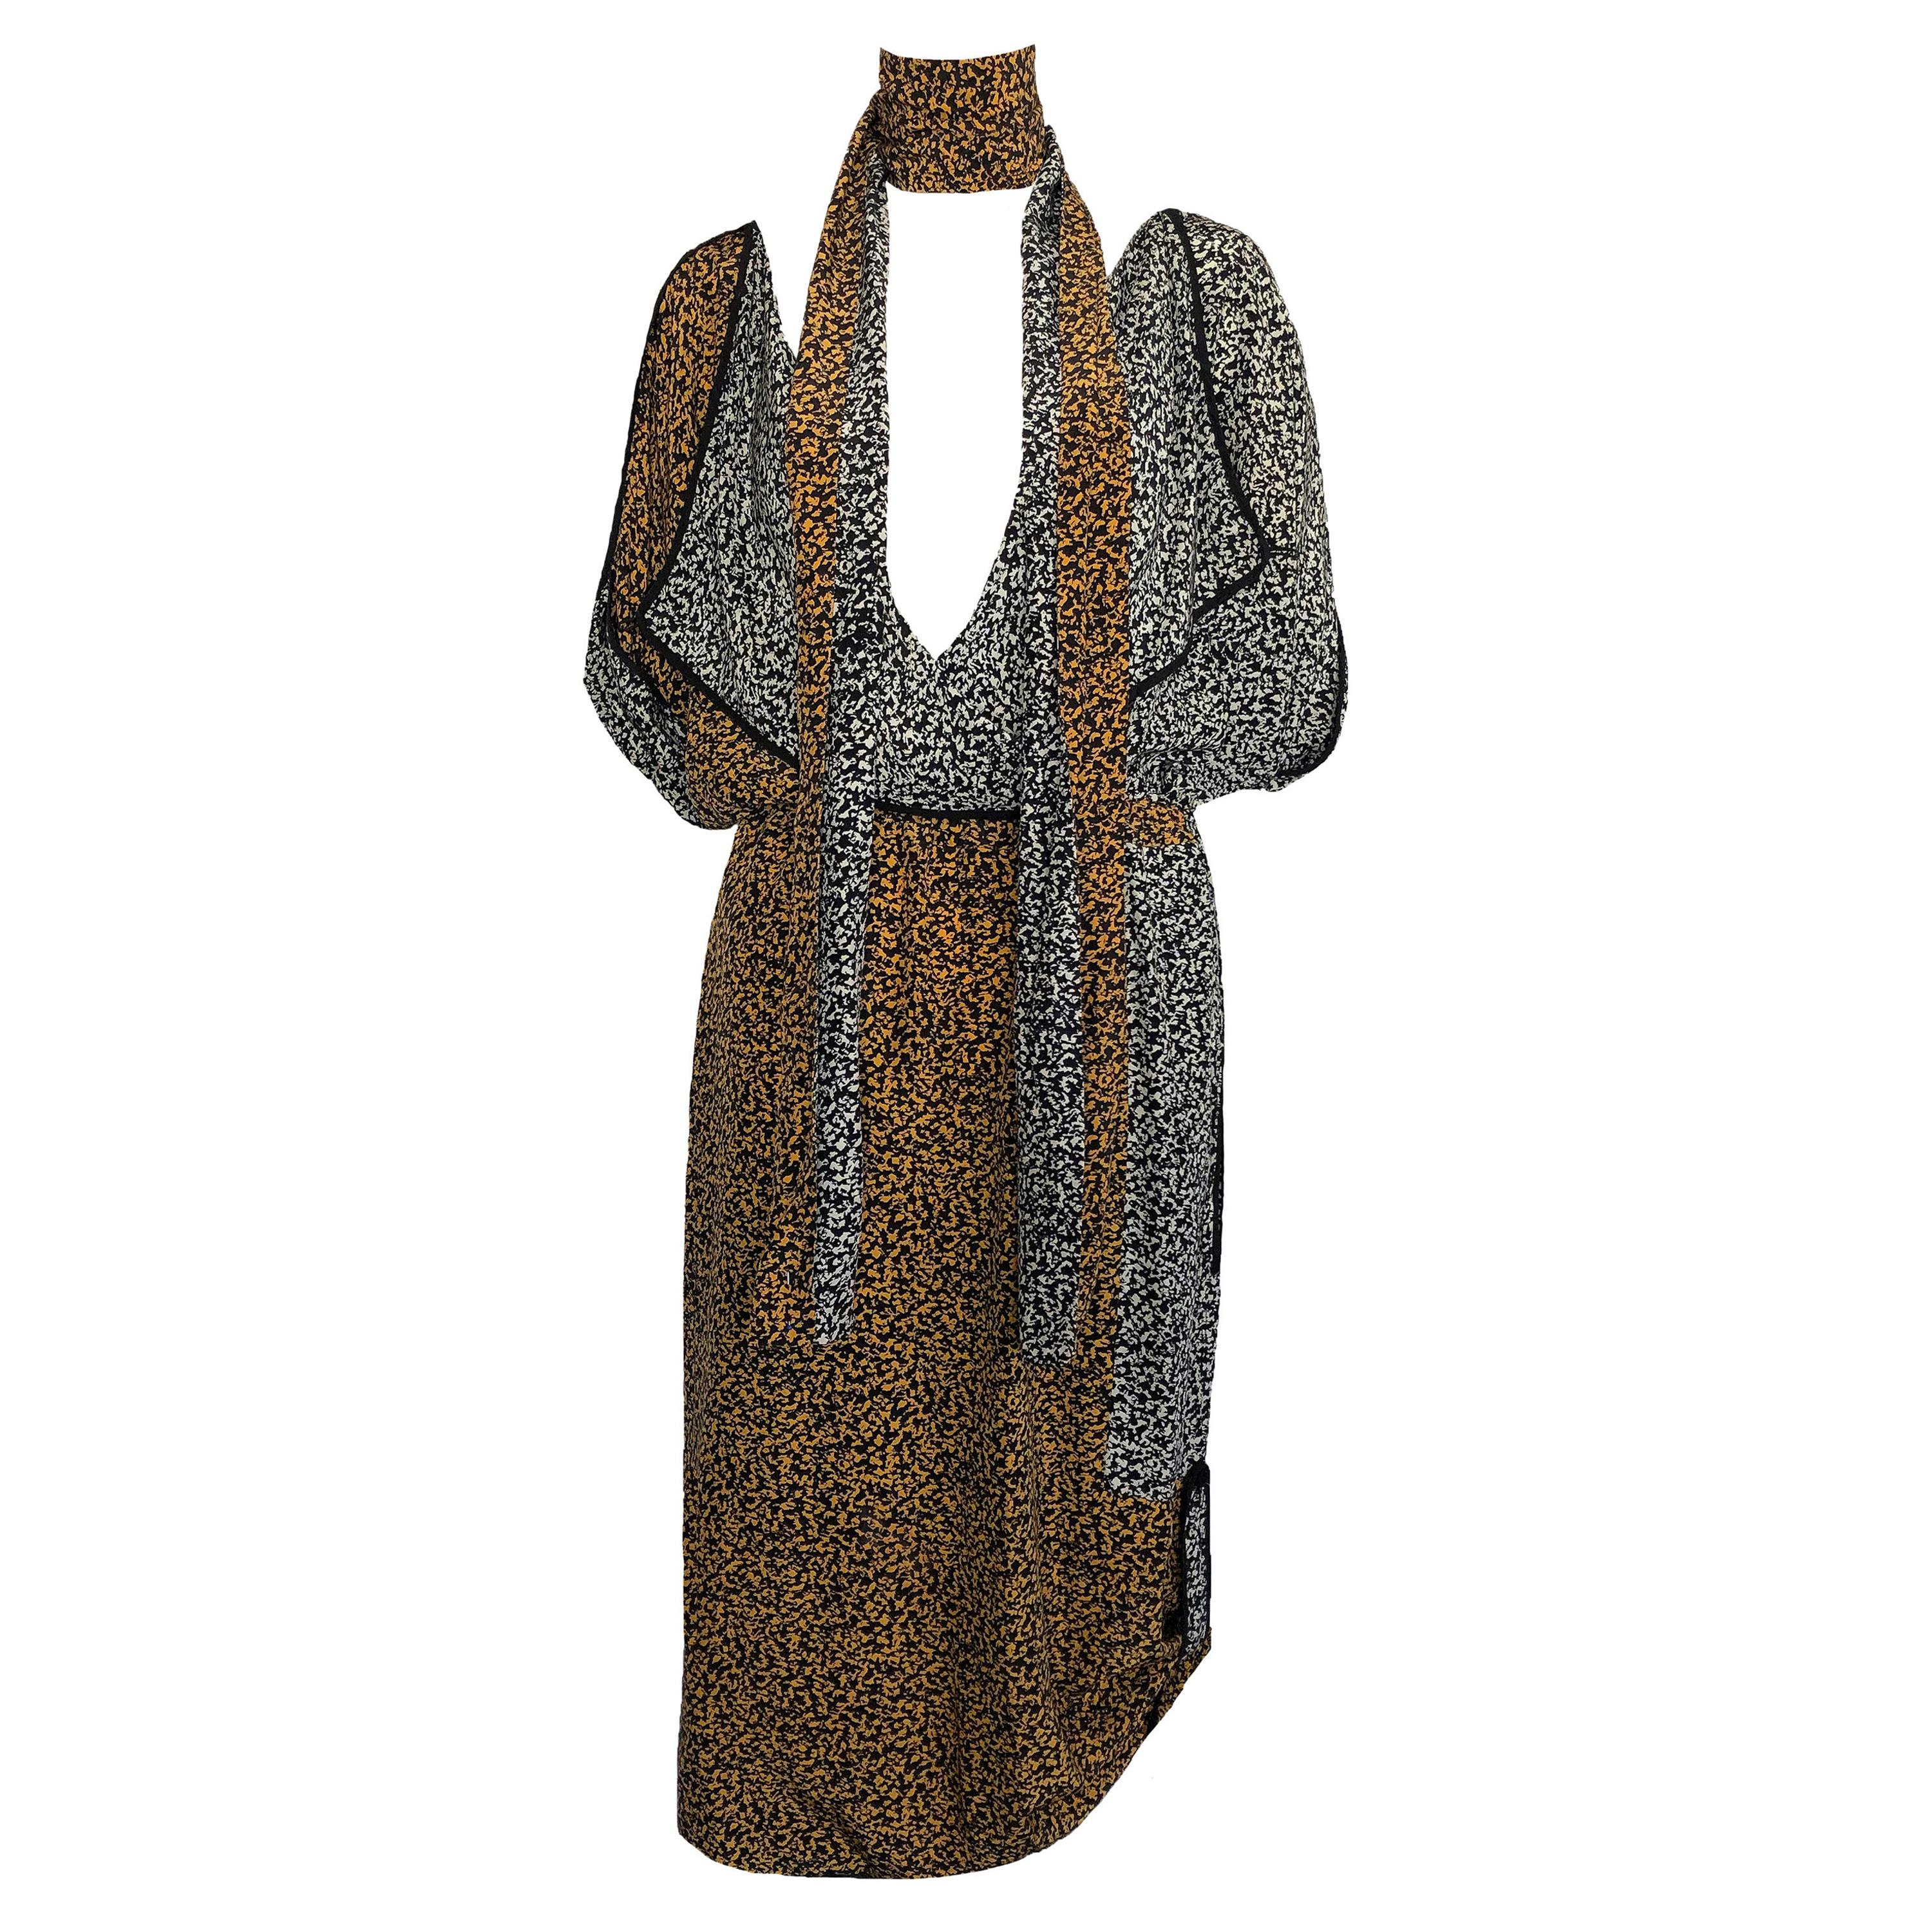 Janice Wainwright 1980s Vintage Printed Silk Dress & Scarf